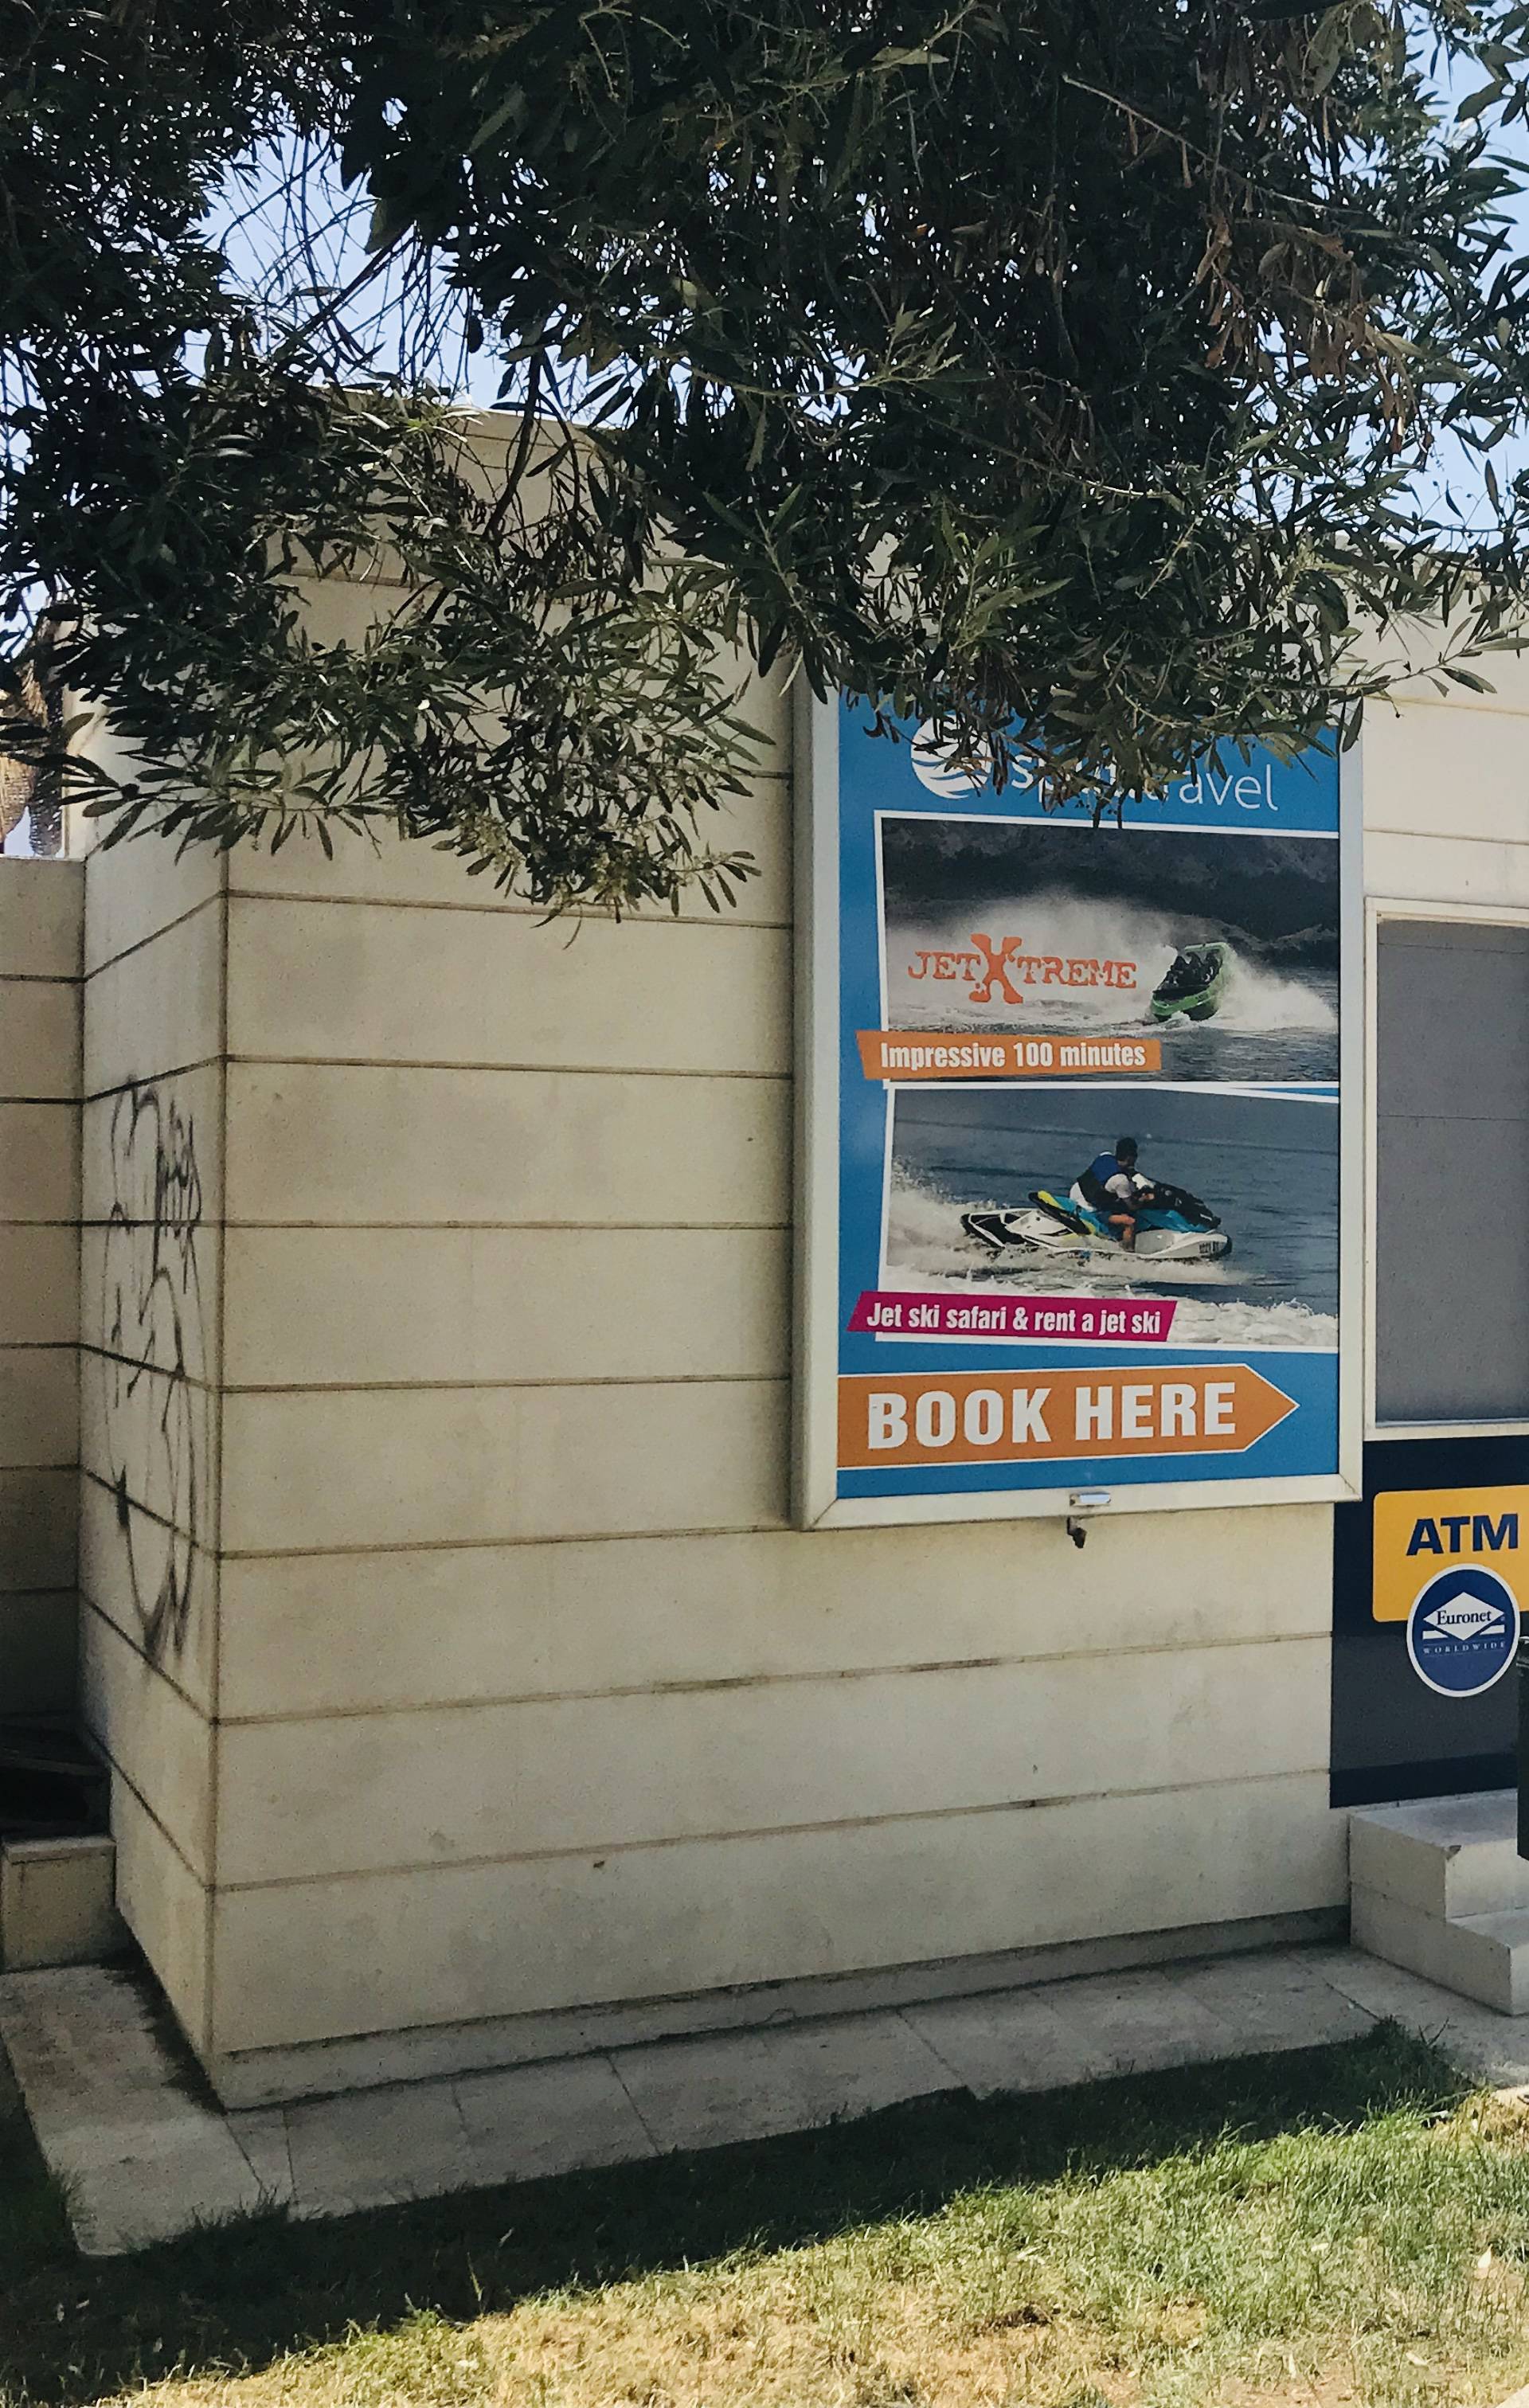 Sad ste zas*ali: WC u Splitu je bankomat i turistička agencija